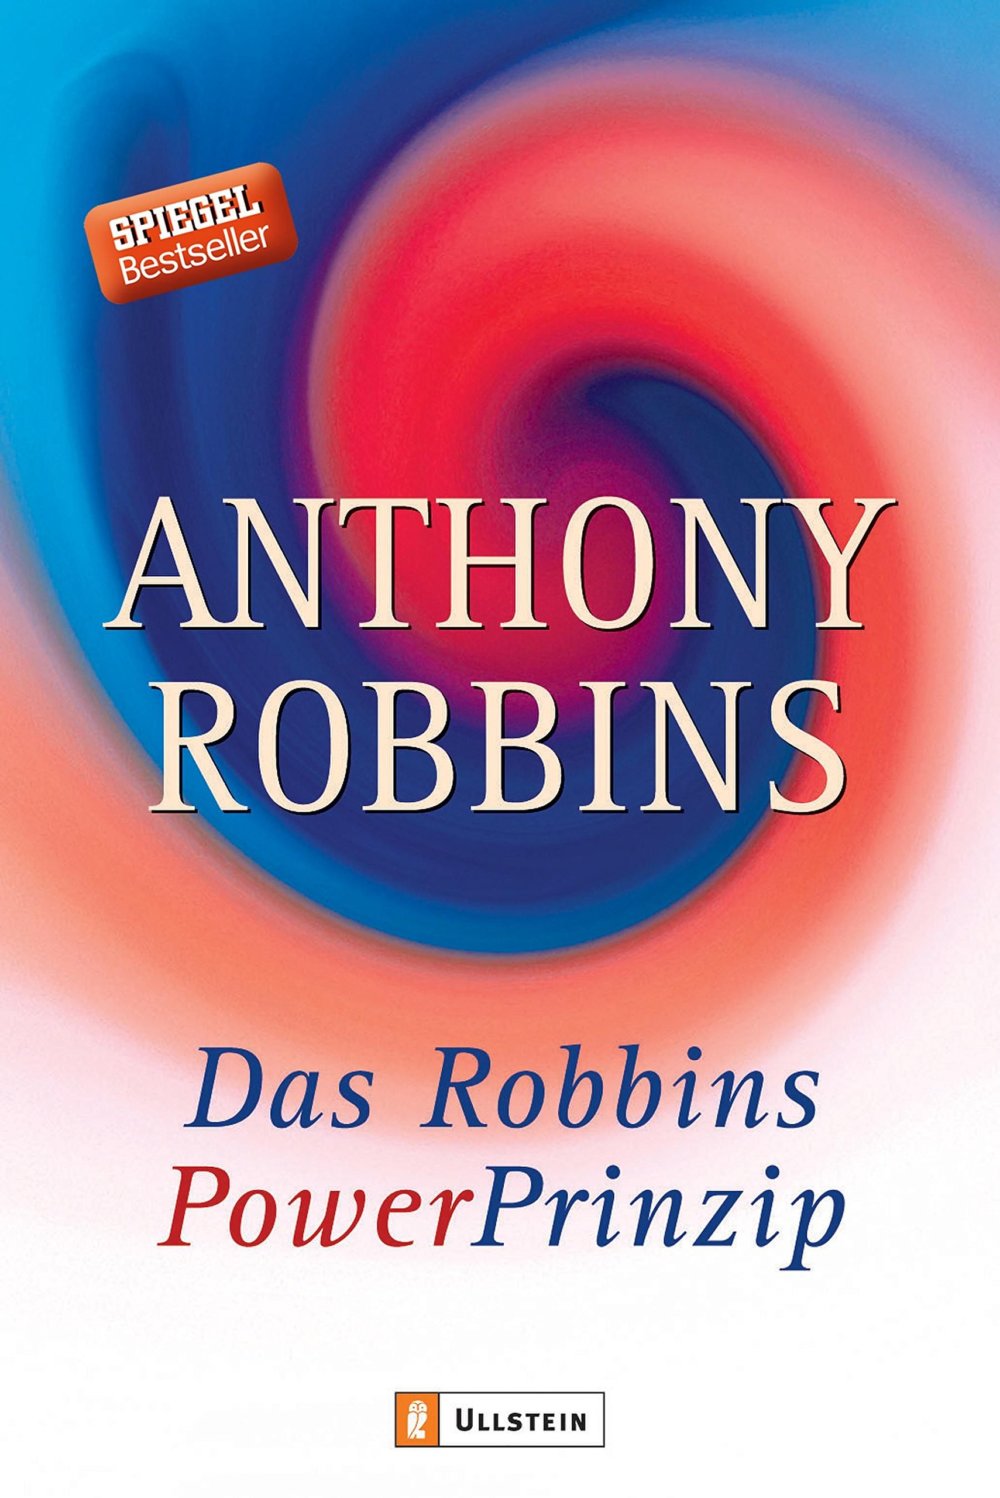 Buch: "Das Robbins Power Prinzip: Befreie die innere Kraft" von Anthony Robbins | Spiegel Bestseller mit vielen Elementen aus dem NLP; wie man innere Motive aufbaut und nutzt, um dauerhaft motiviert zu bleiben und seine Ziele zu erreichen (Amazon, 3548742262)